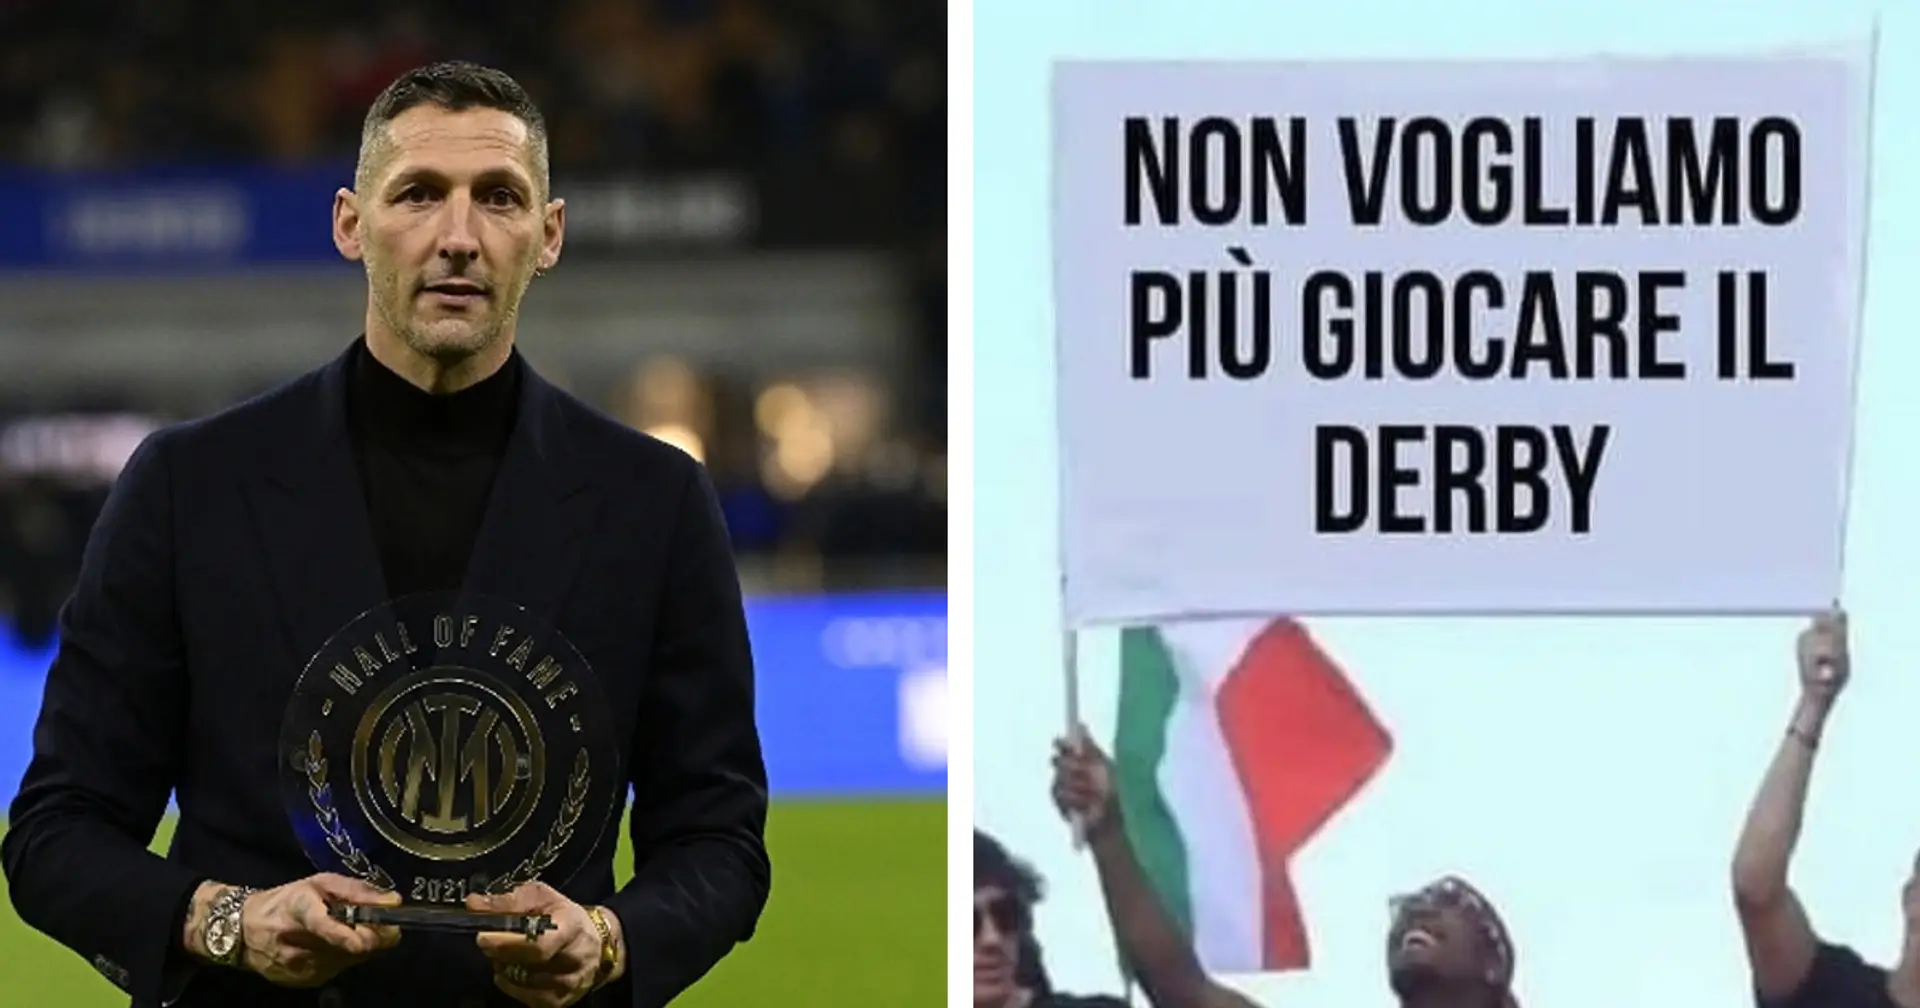 Materazzi la tocca piano, il messaggio social al Milan diventa virale: "Non voglio più giocare il derby" - FOTO